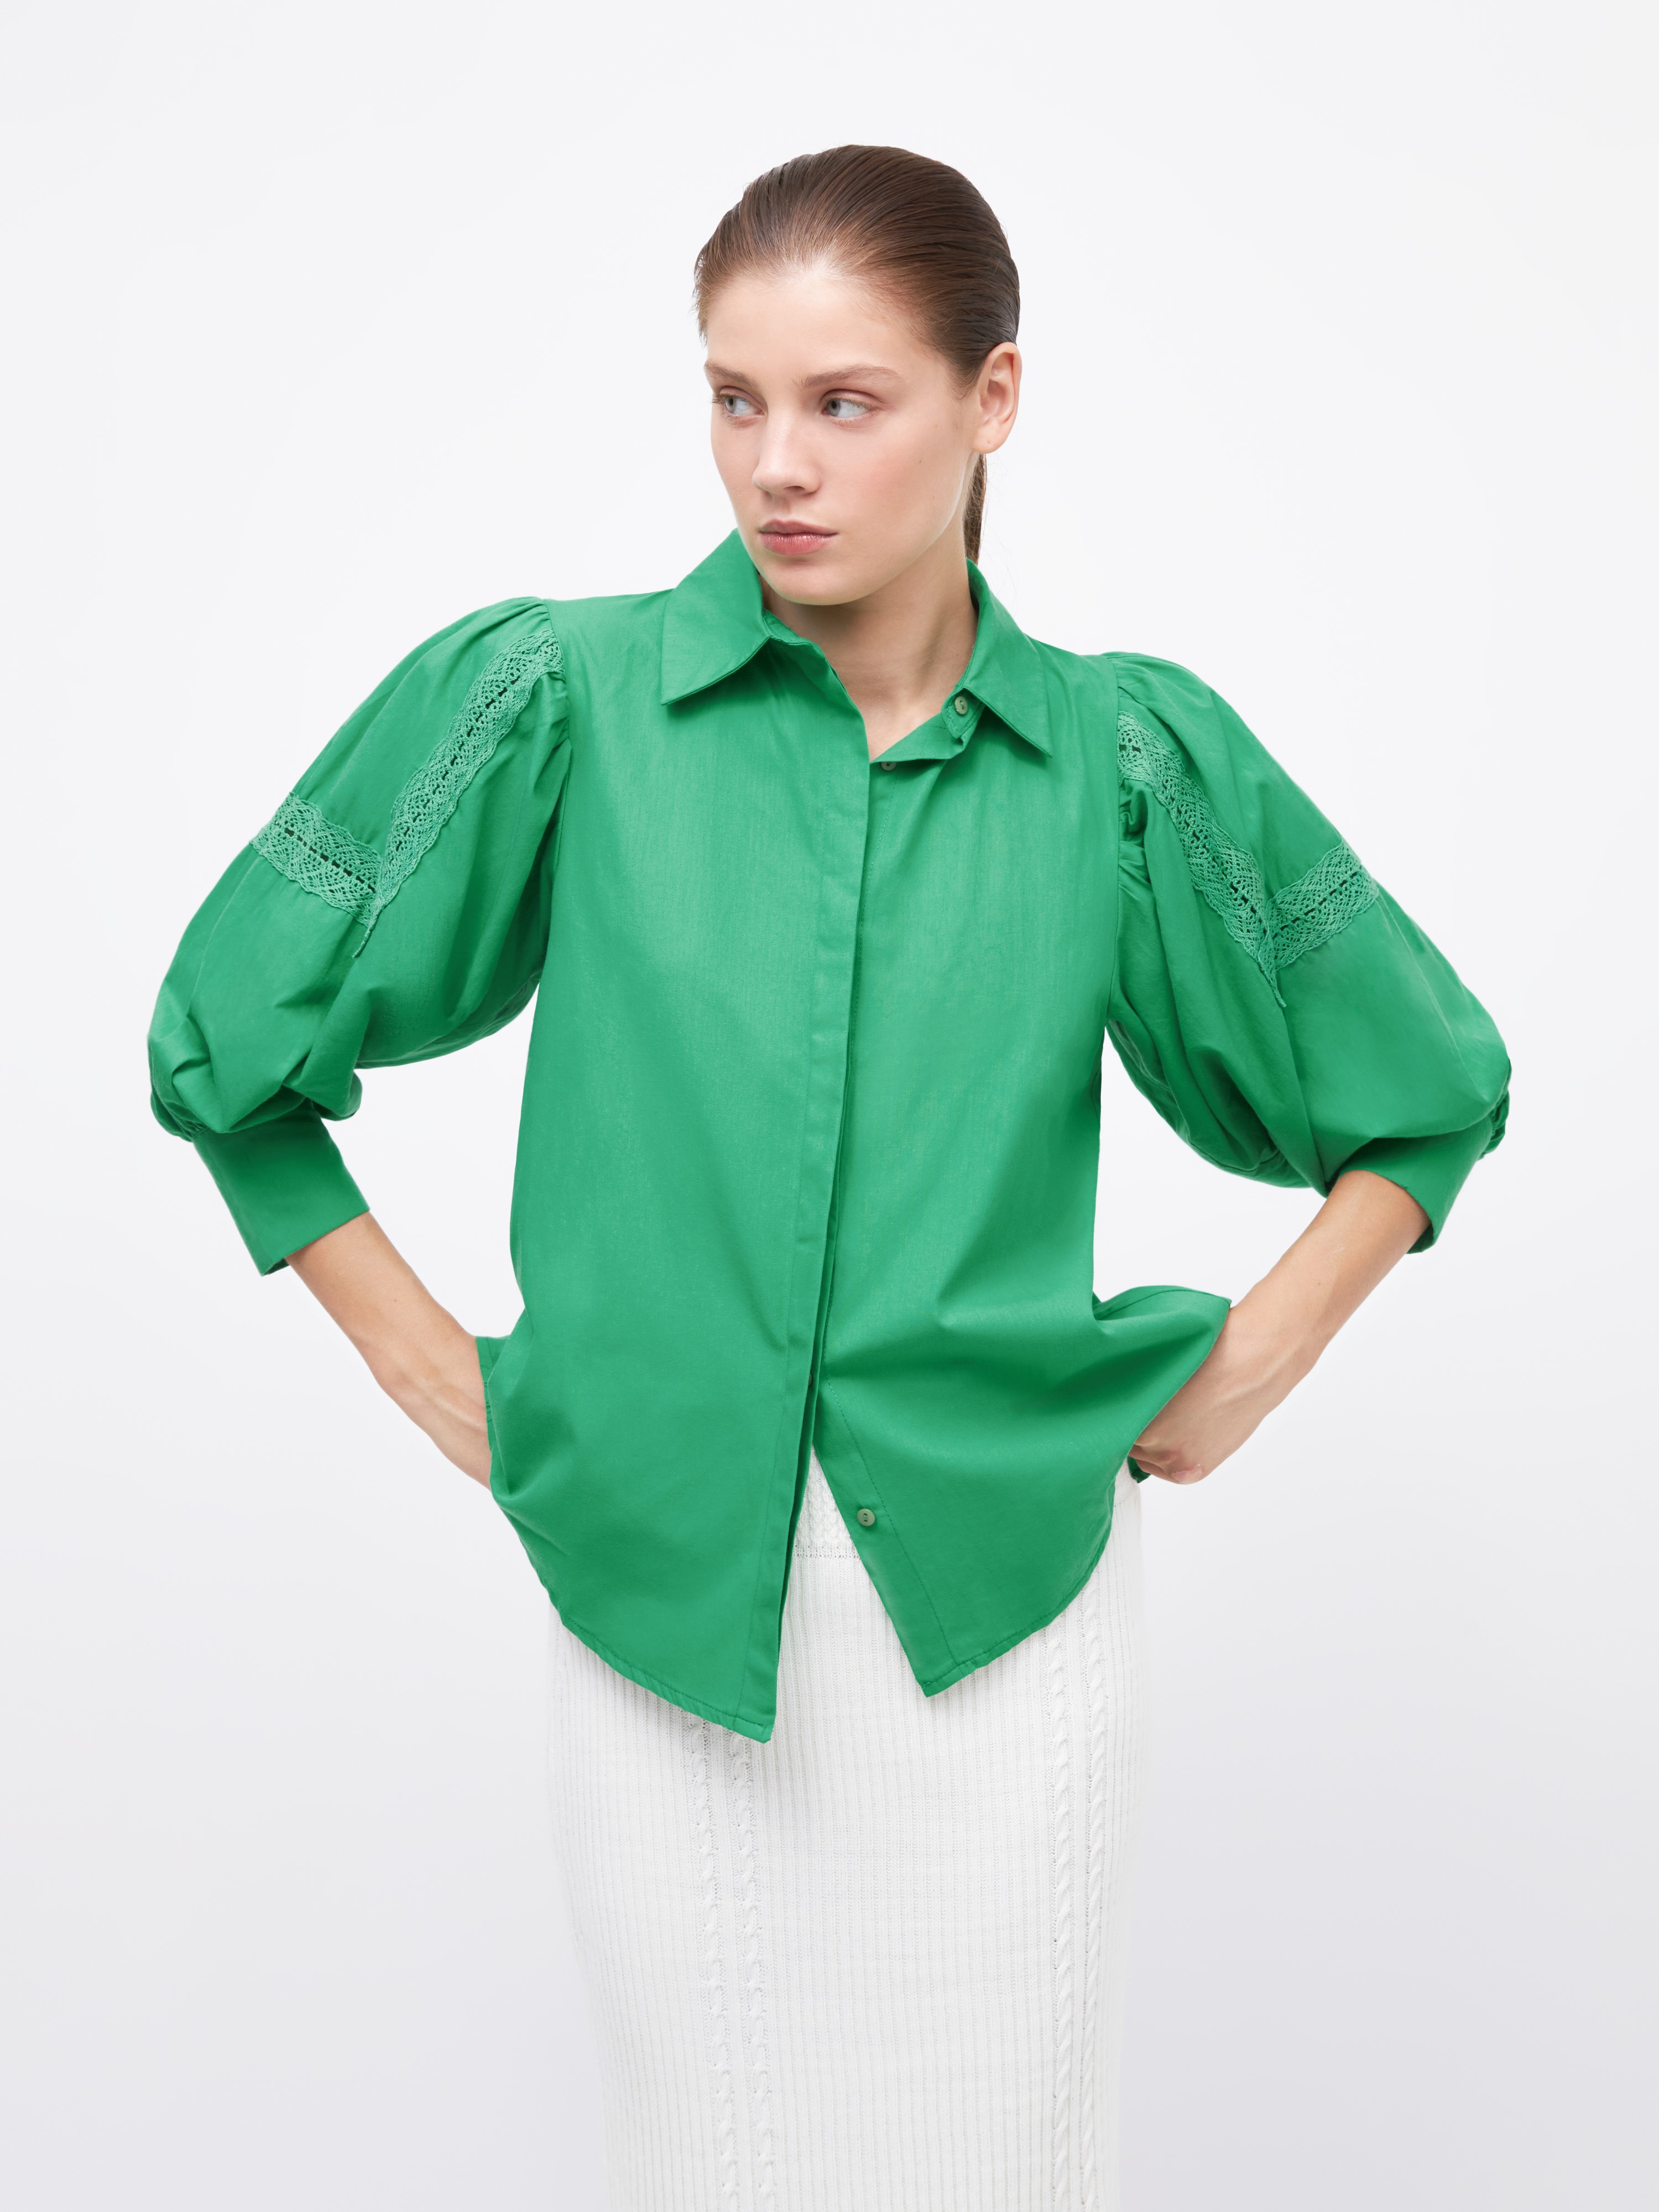 Рубашка женская Arive ARV-WS-10521-006 зелёная, размер L